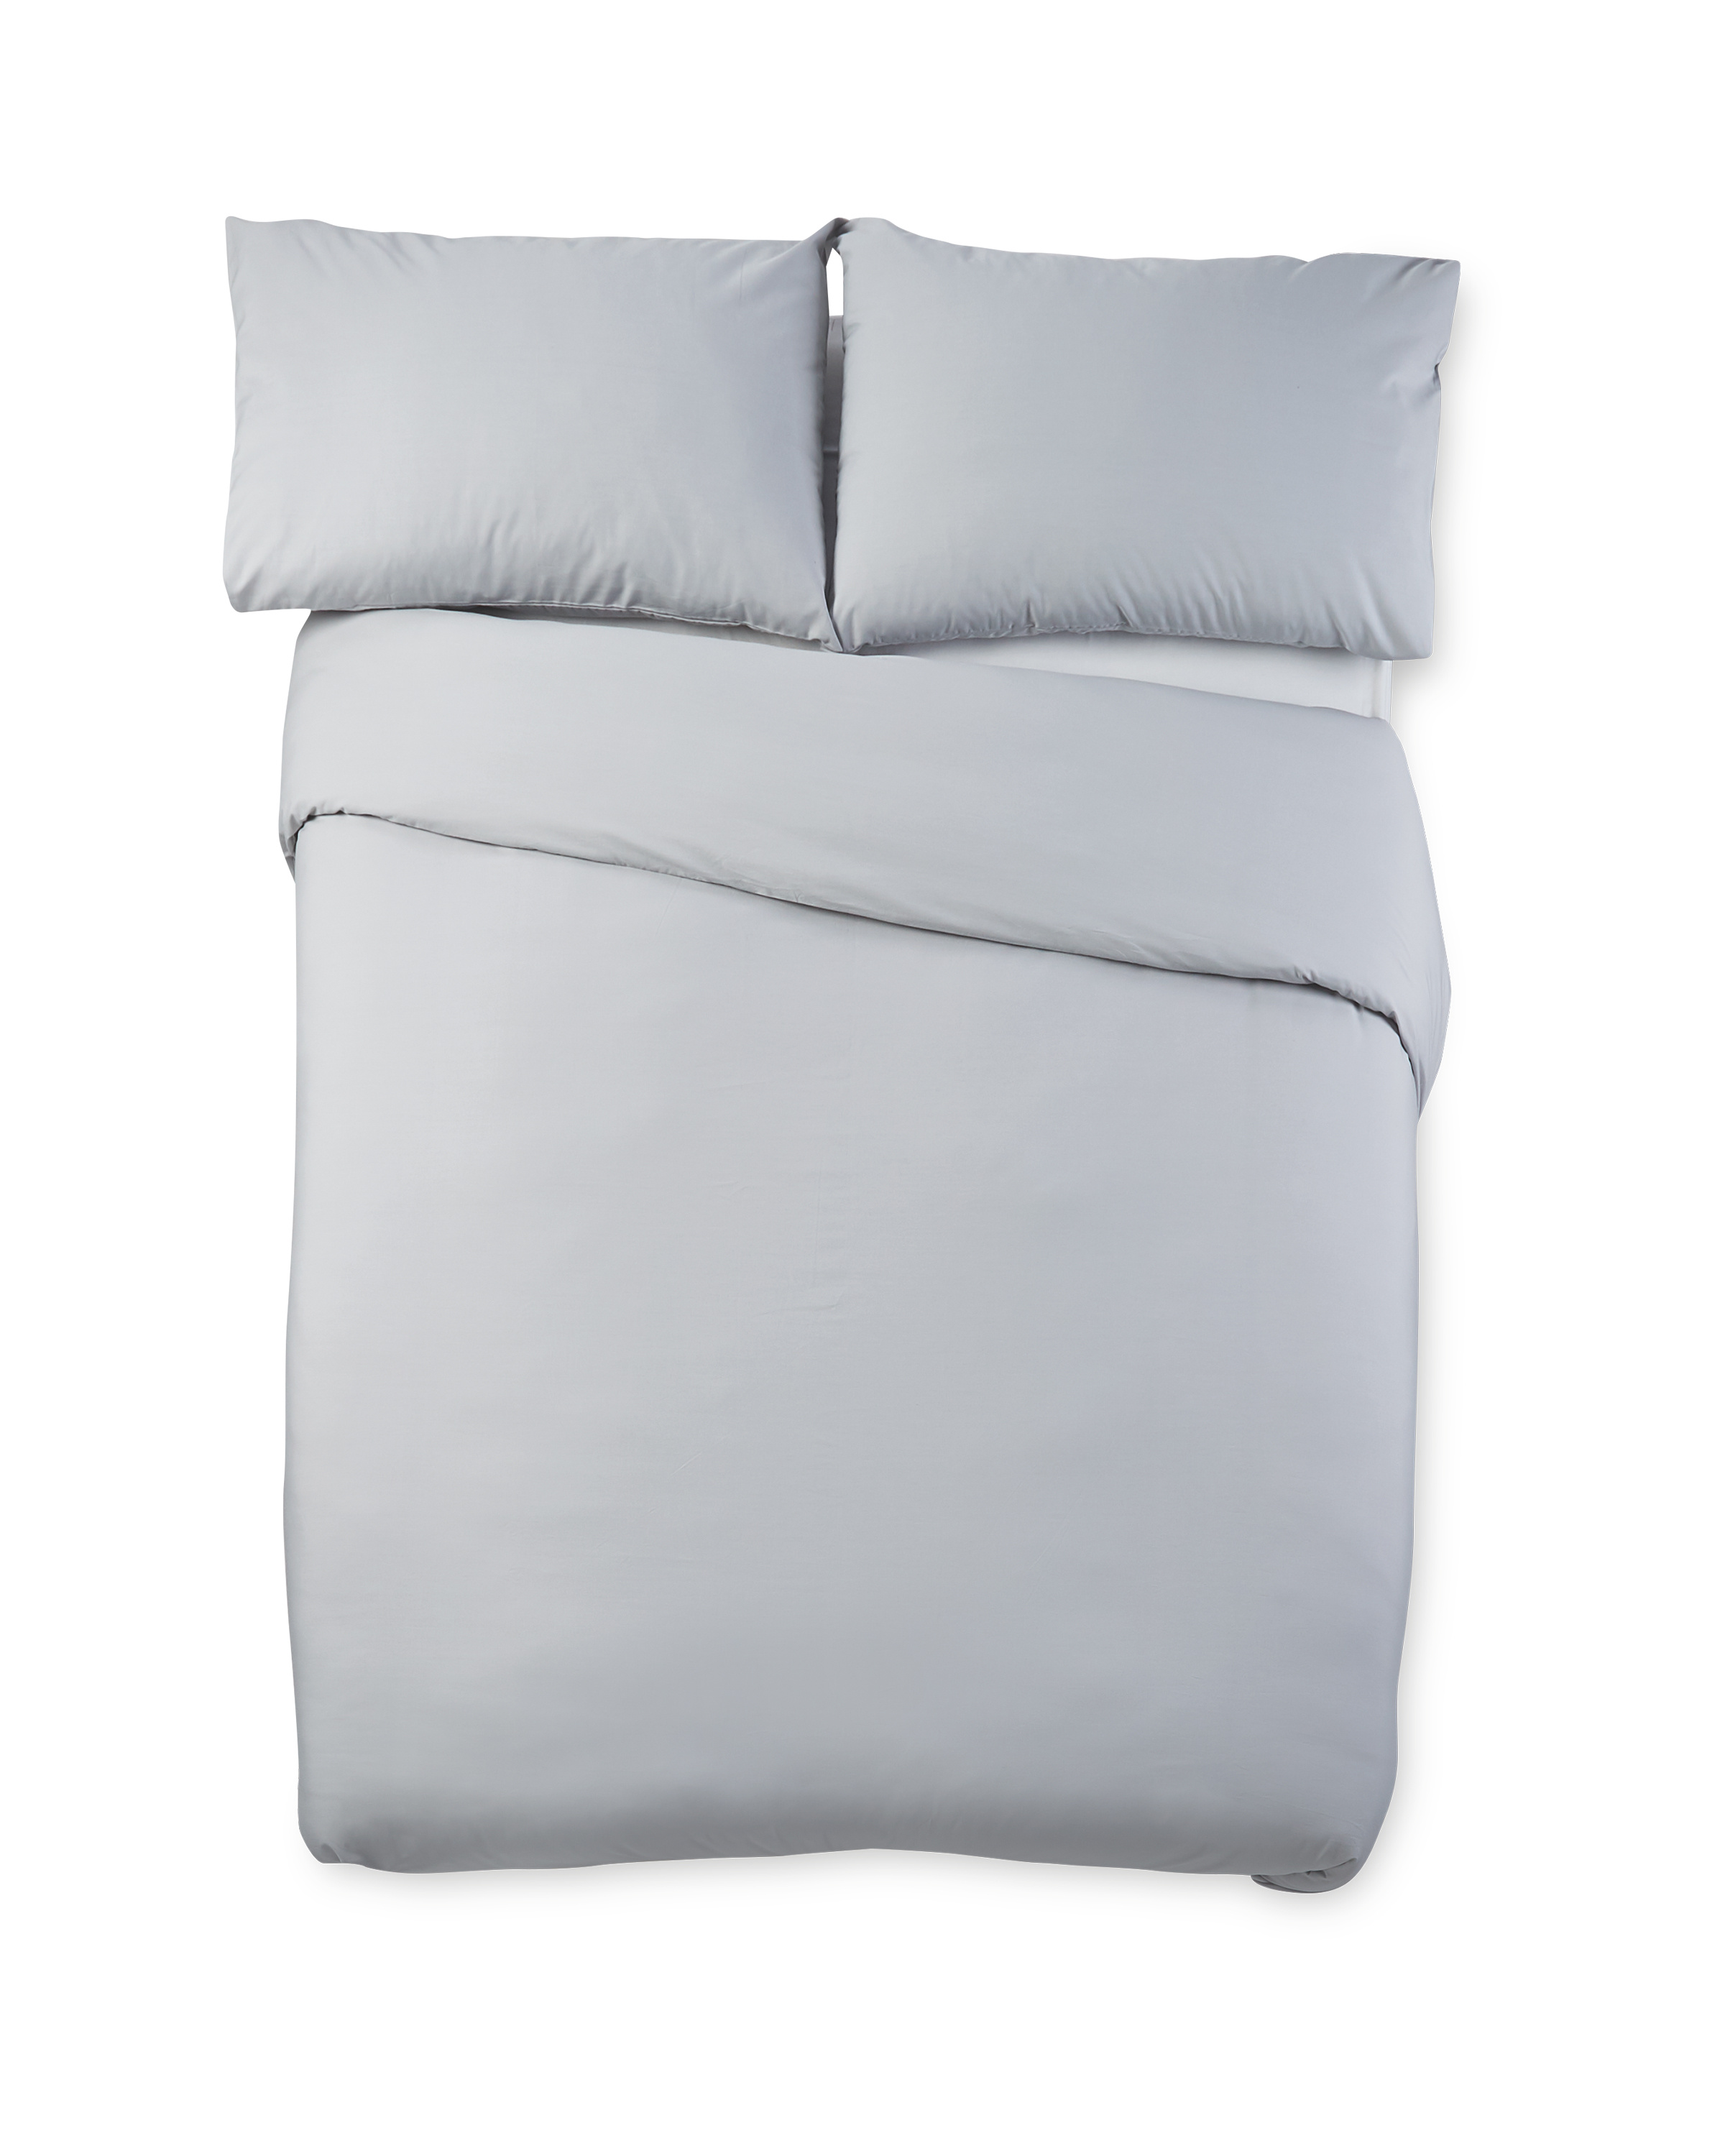 Grey Cooling King Size Duvet Aldi Uk, Grey King Size Bed Linen